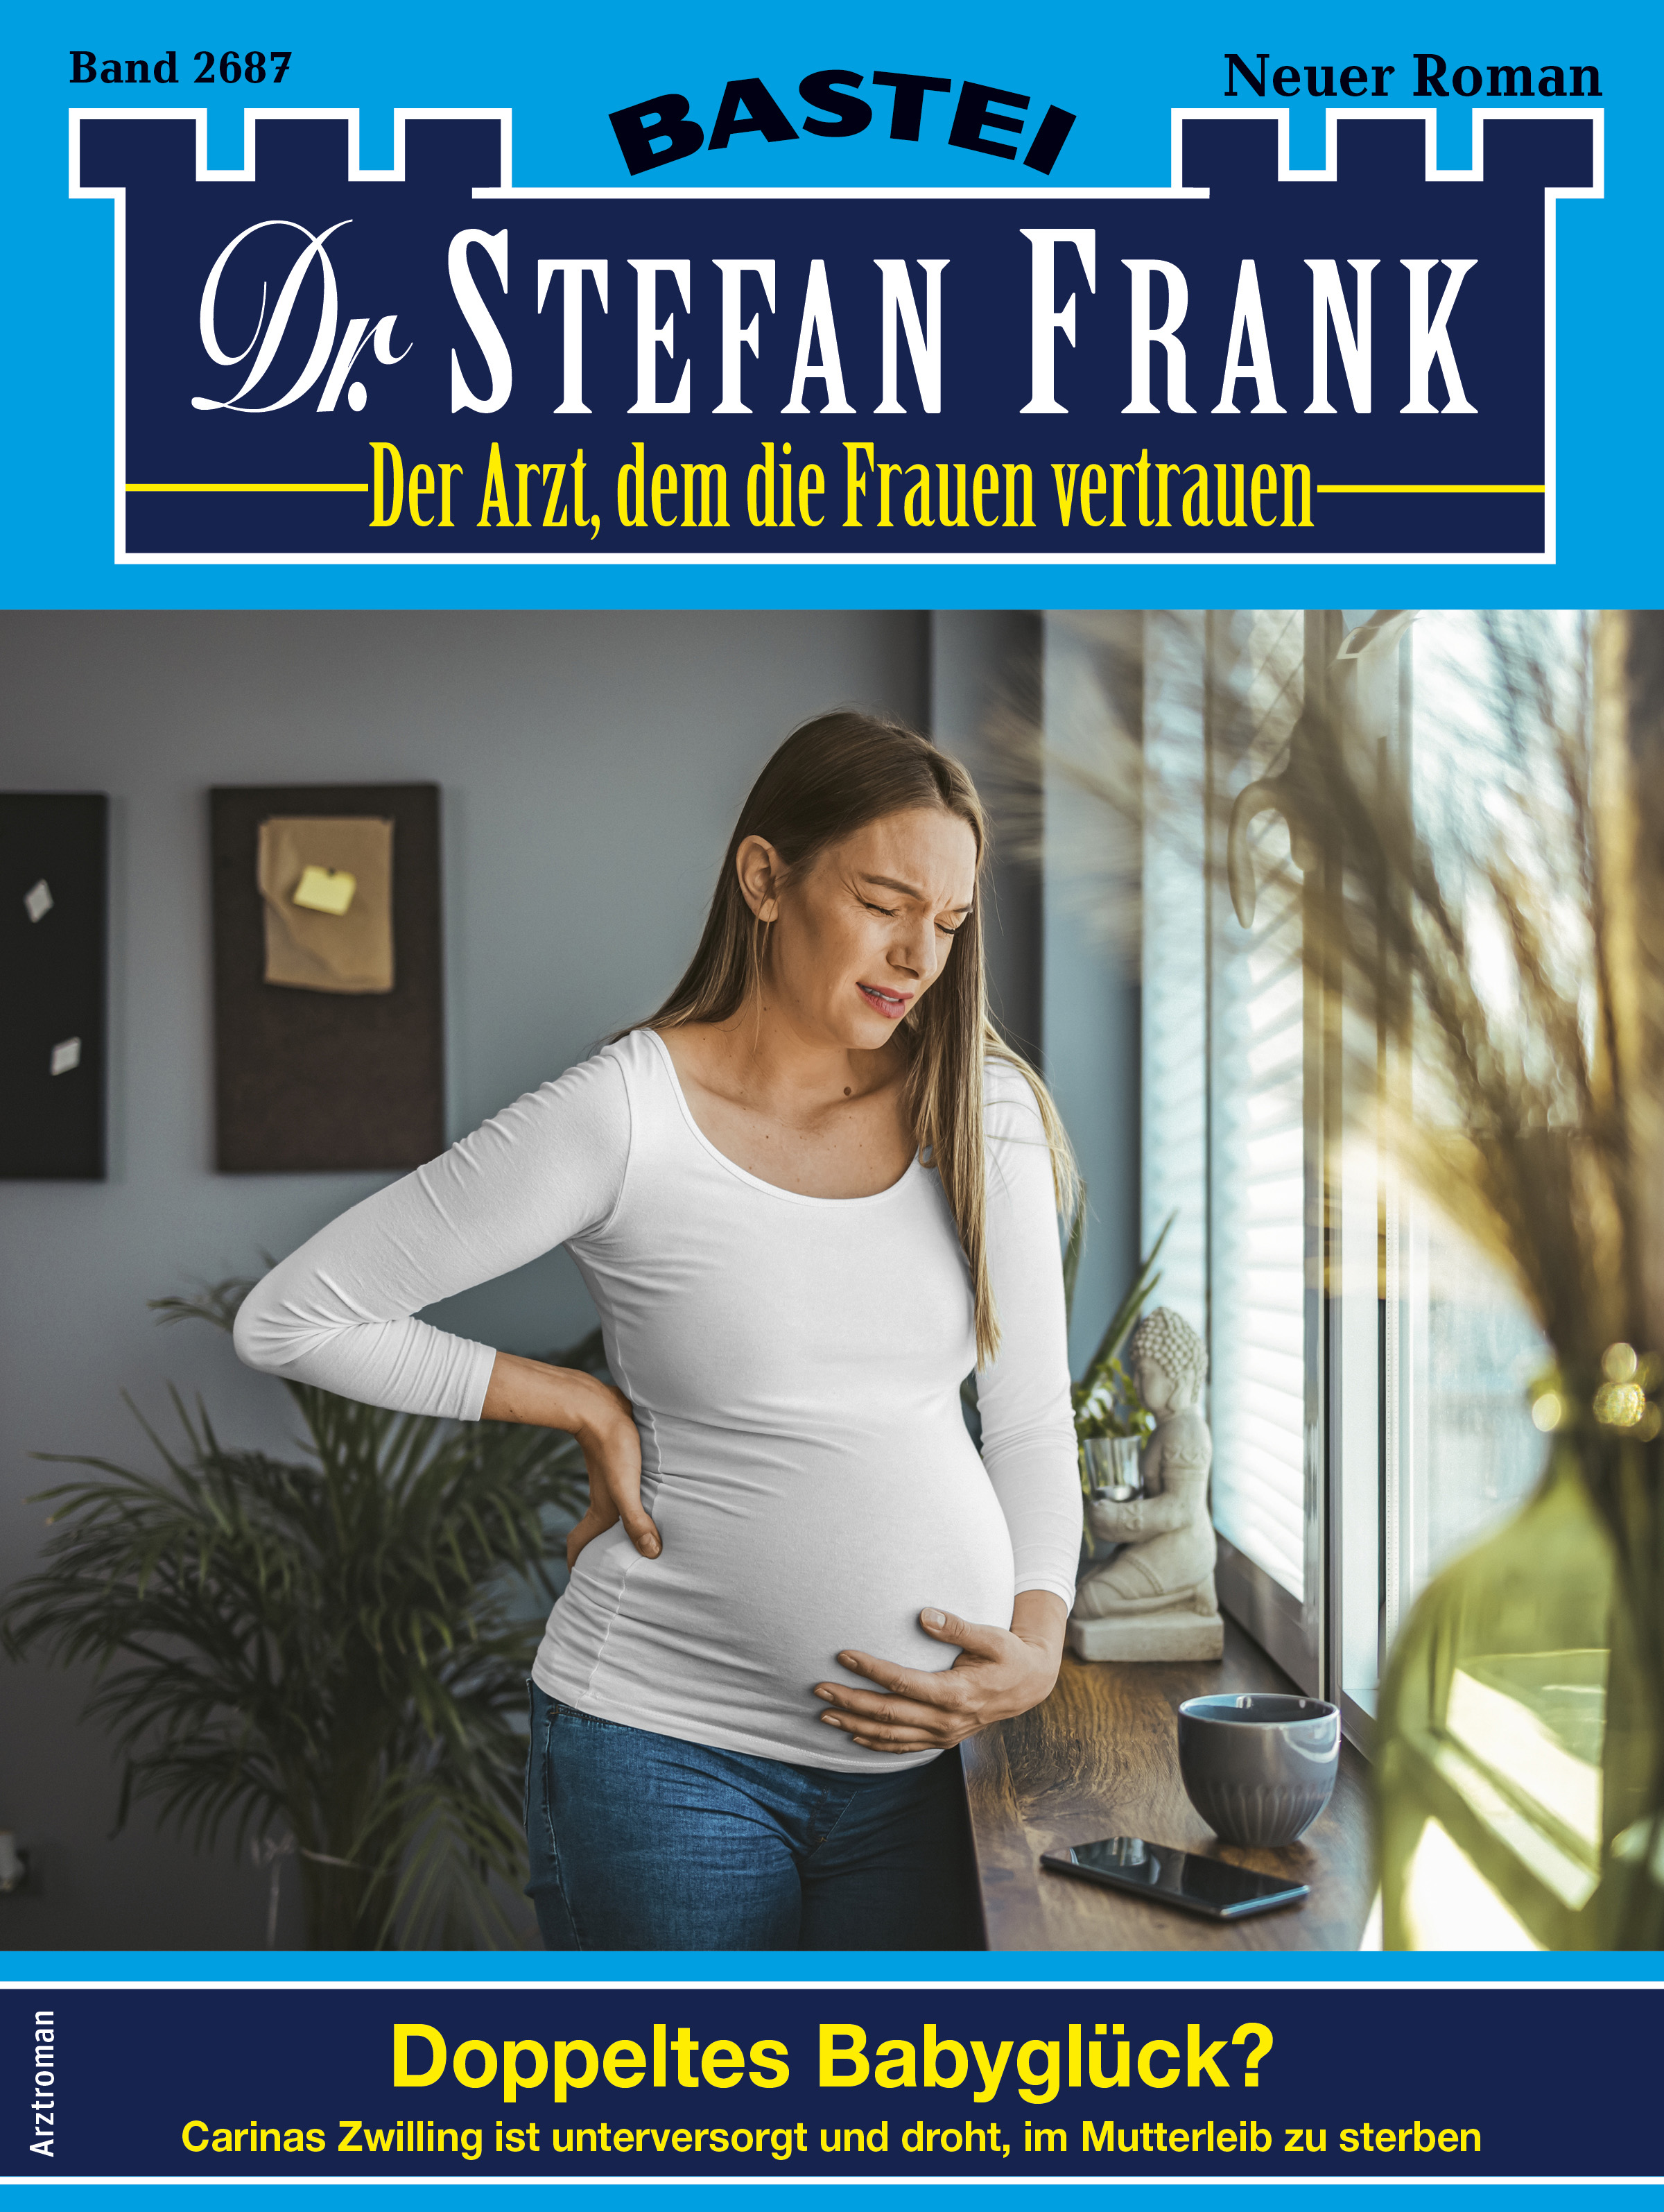 Dr. Stefan Frank 2687